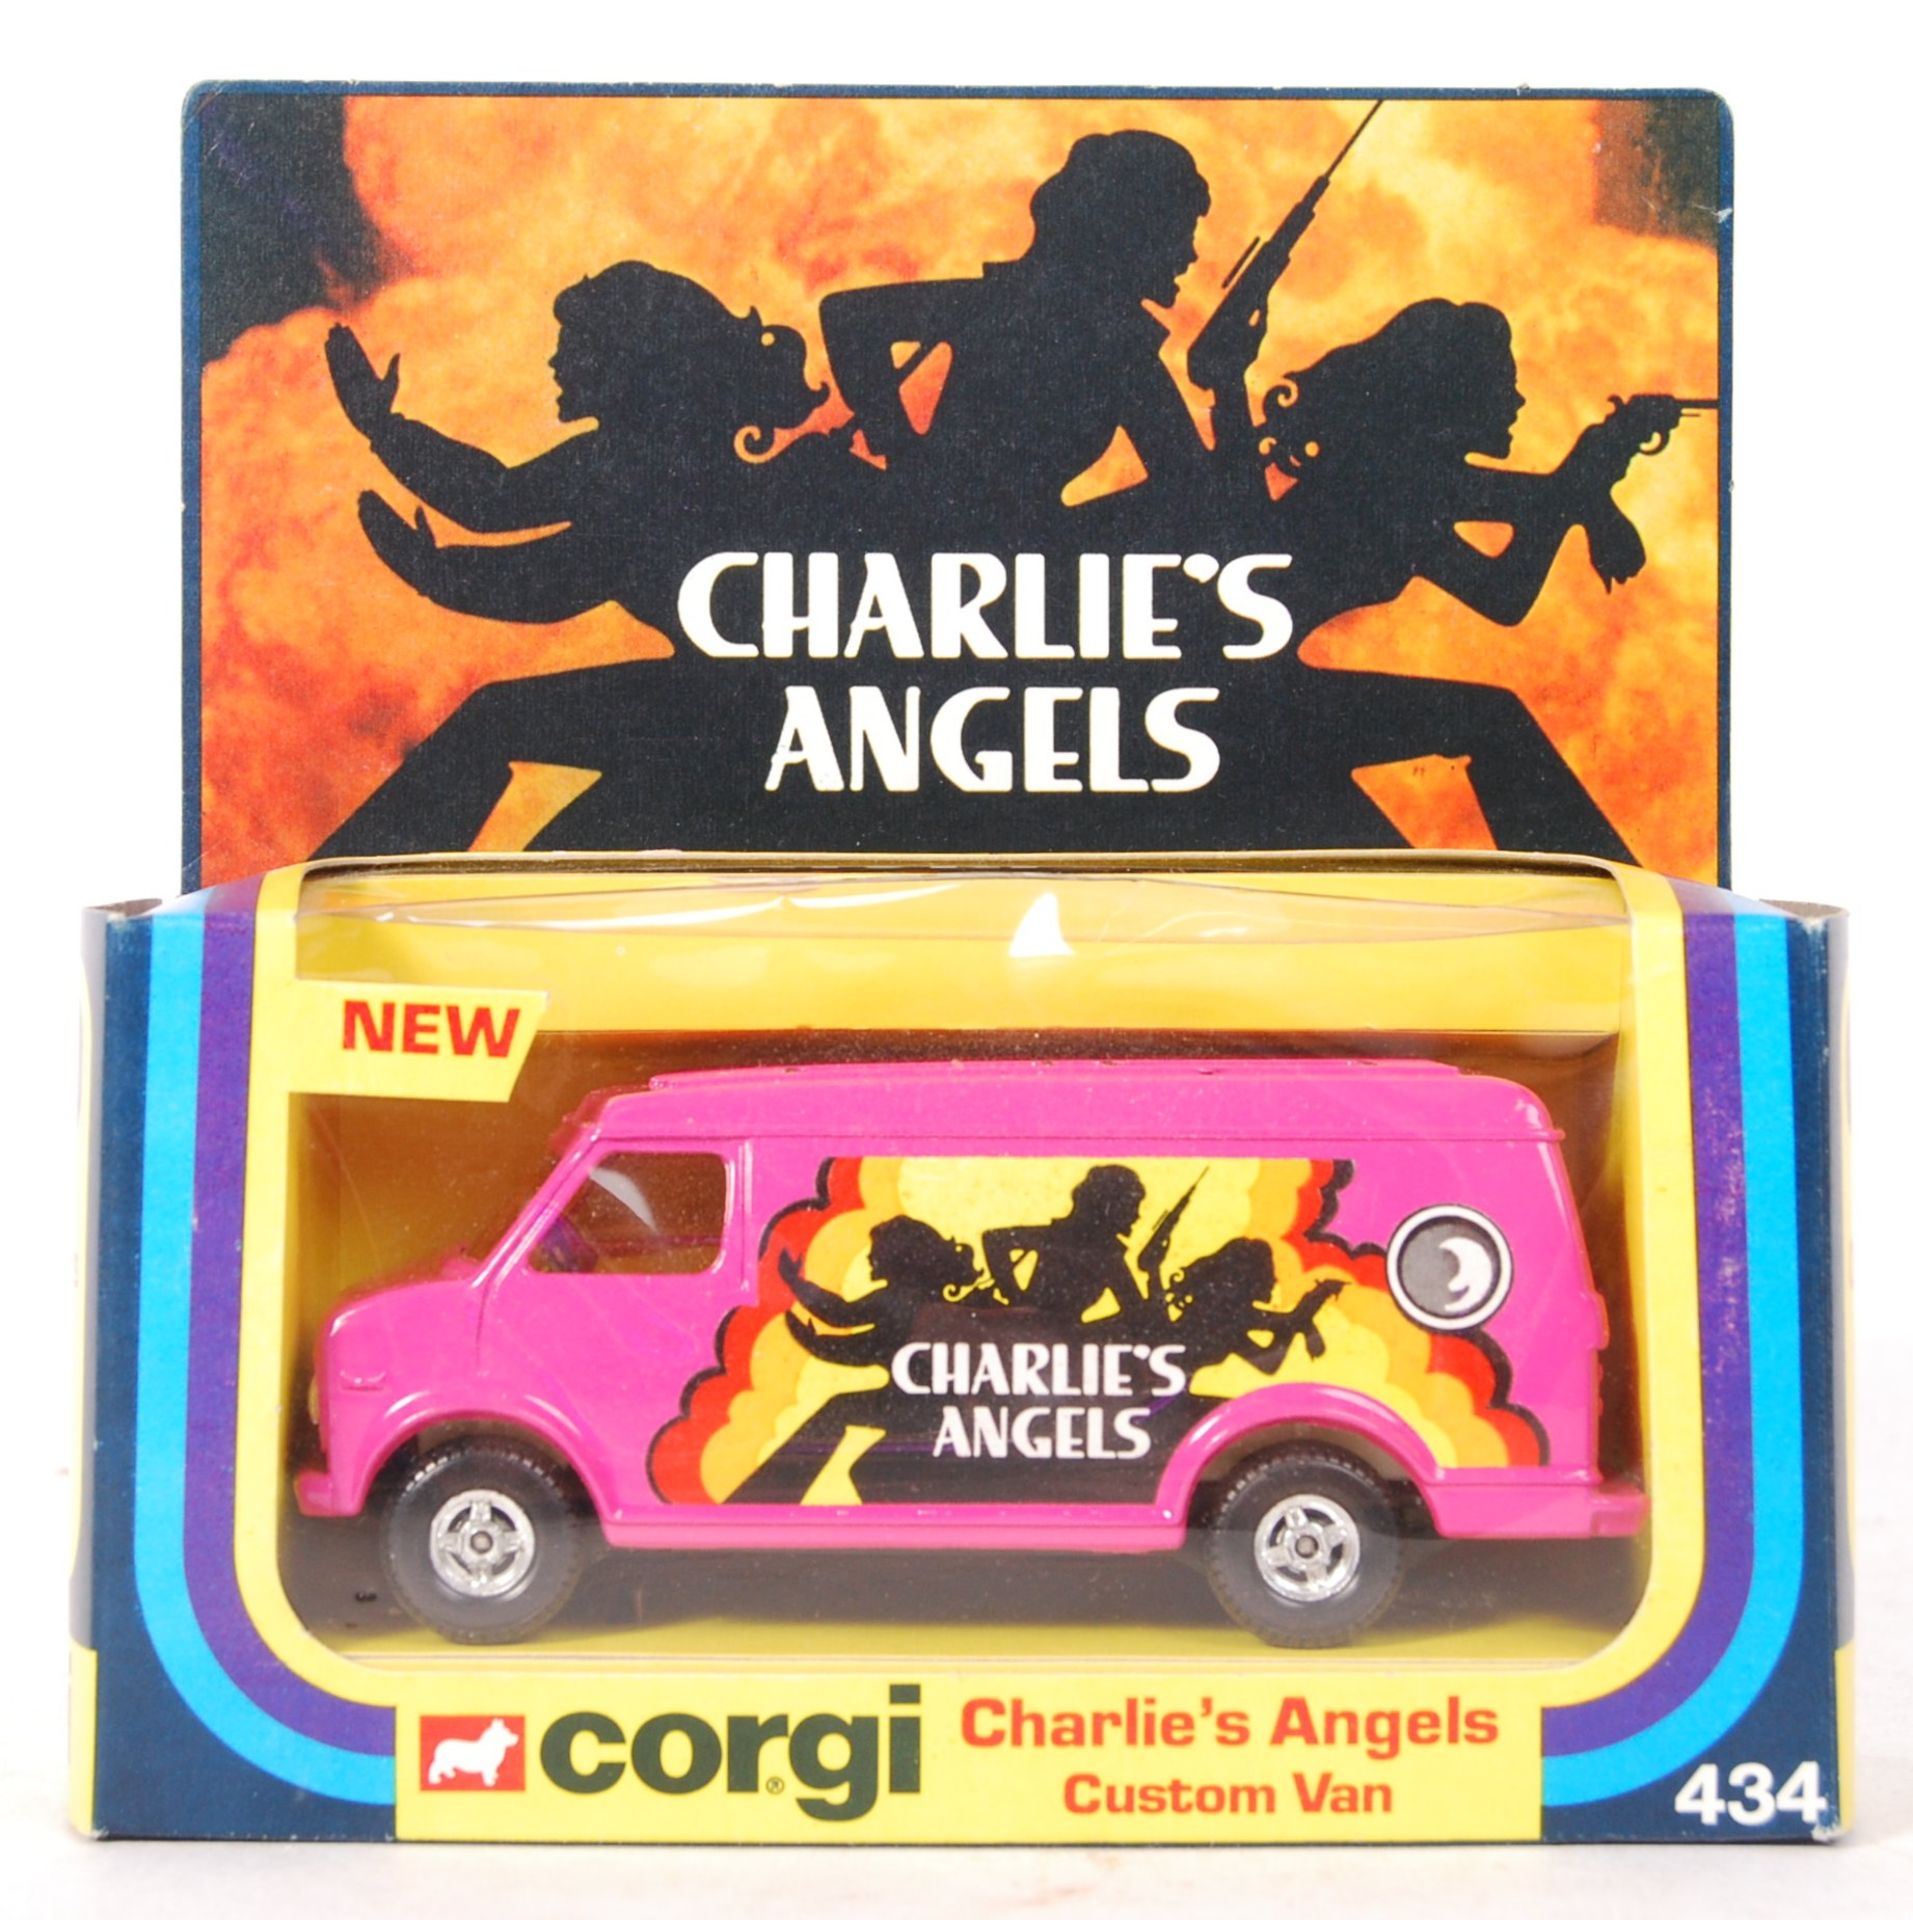 EX-SHOP STOCK CORGI CHARLIE'S ANGELS CUSTOM VAN MODEL